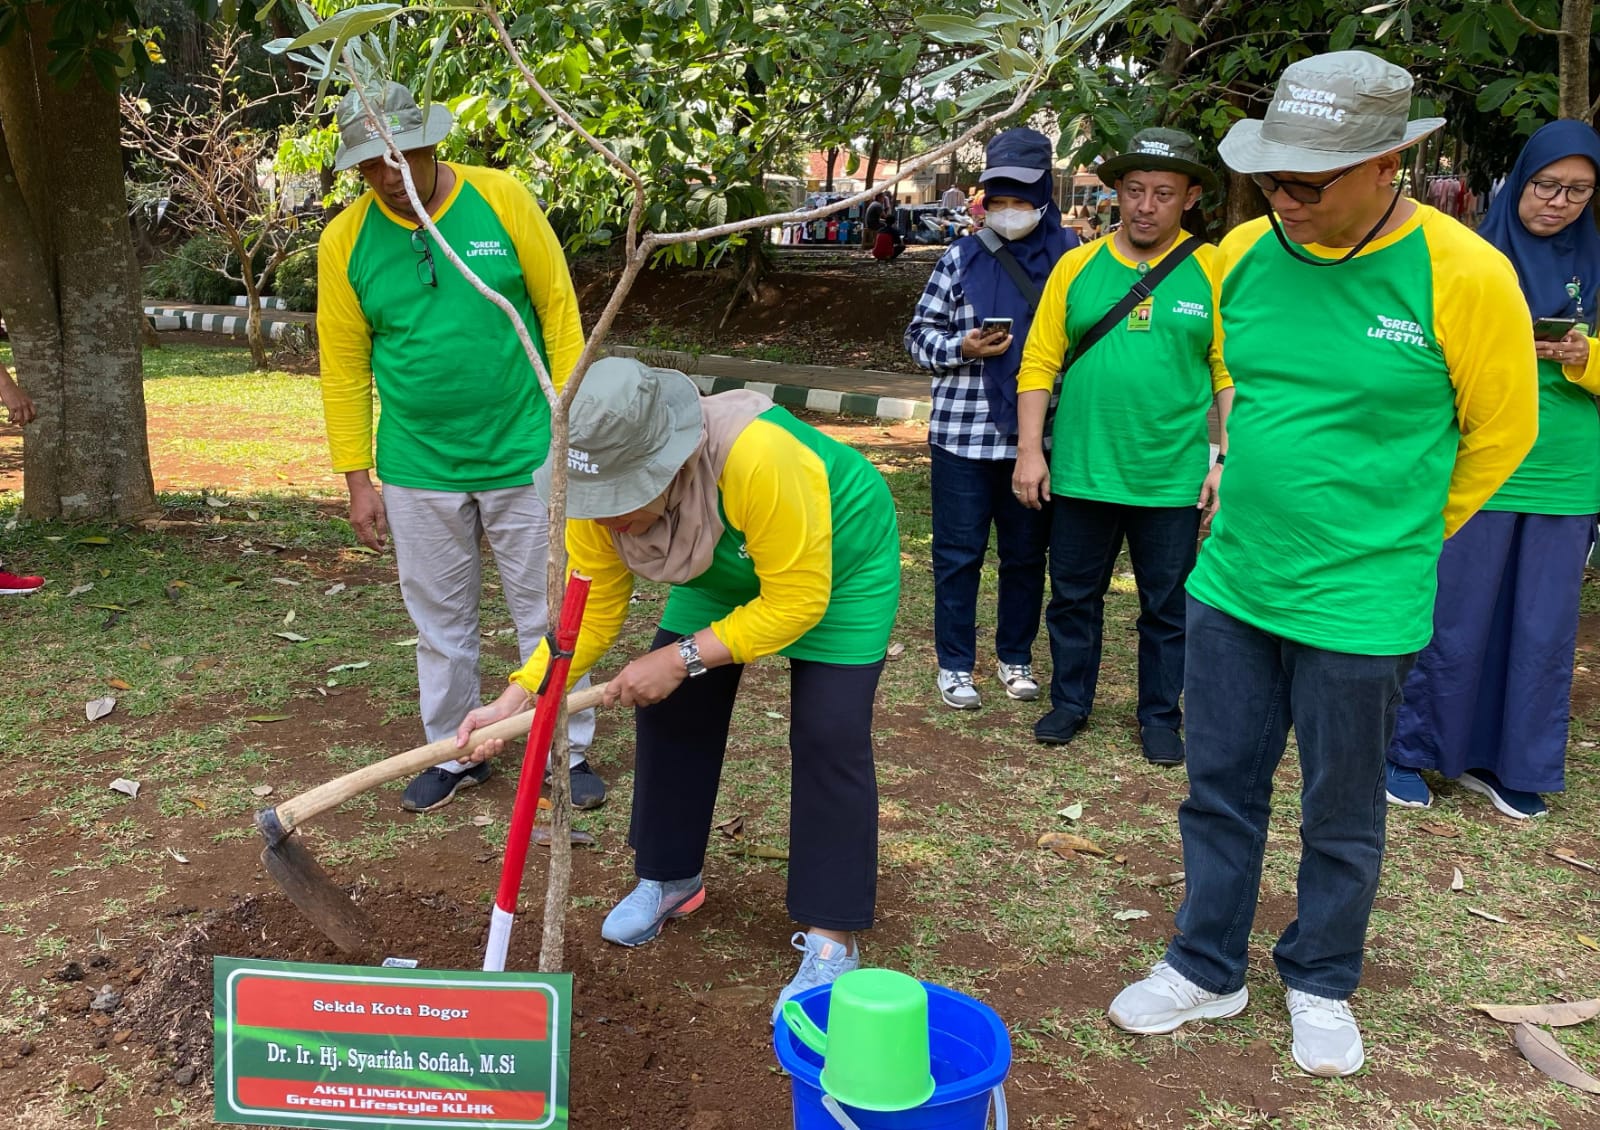 Sekda Kota Bogor, Syarifah Sofiah saat melakukan aksi lingkungan Green Lifestyle.